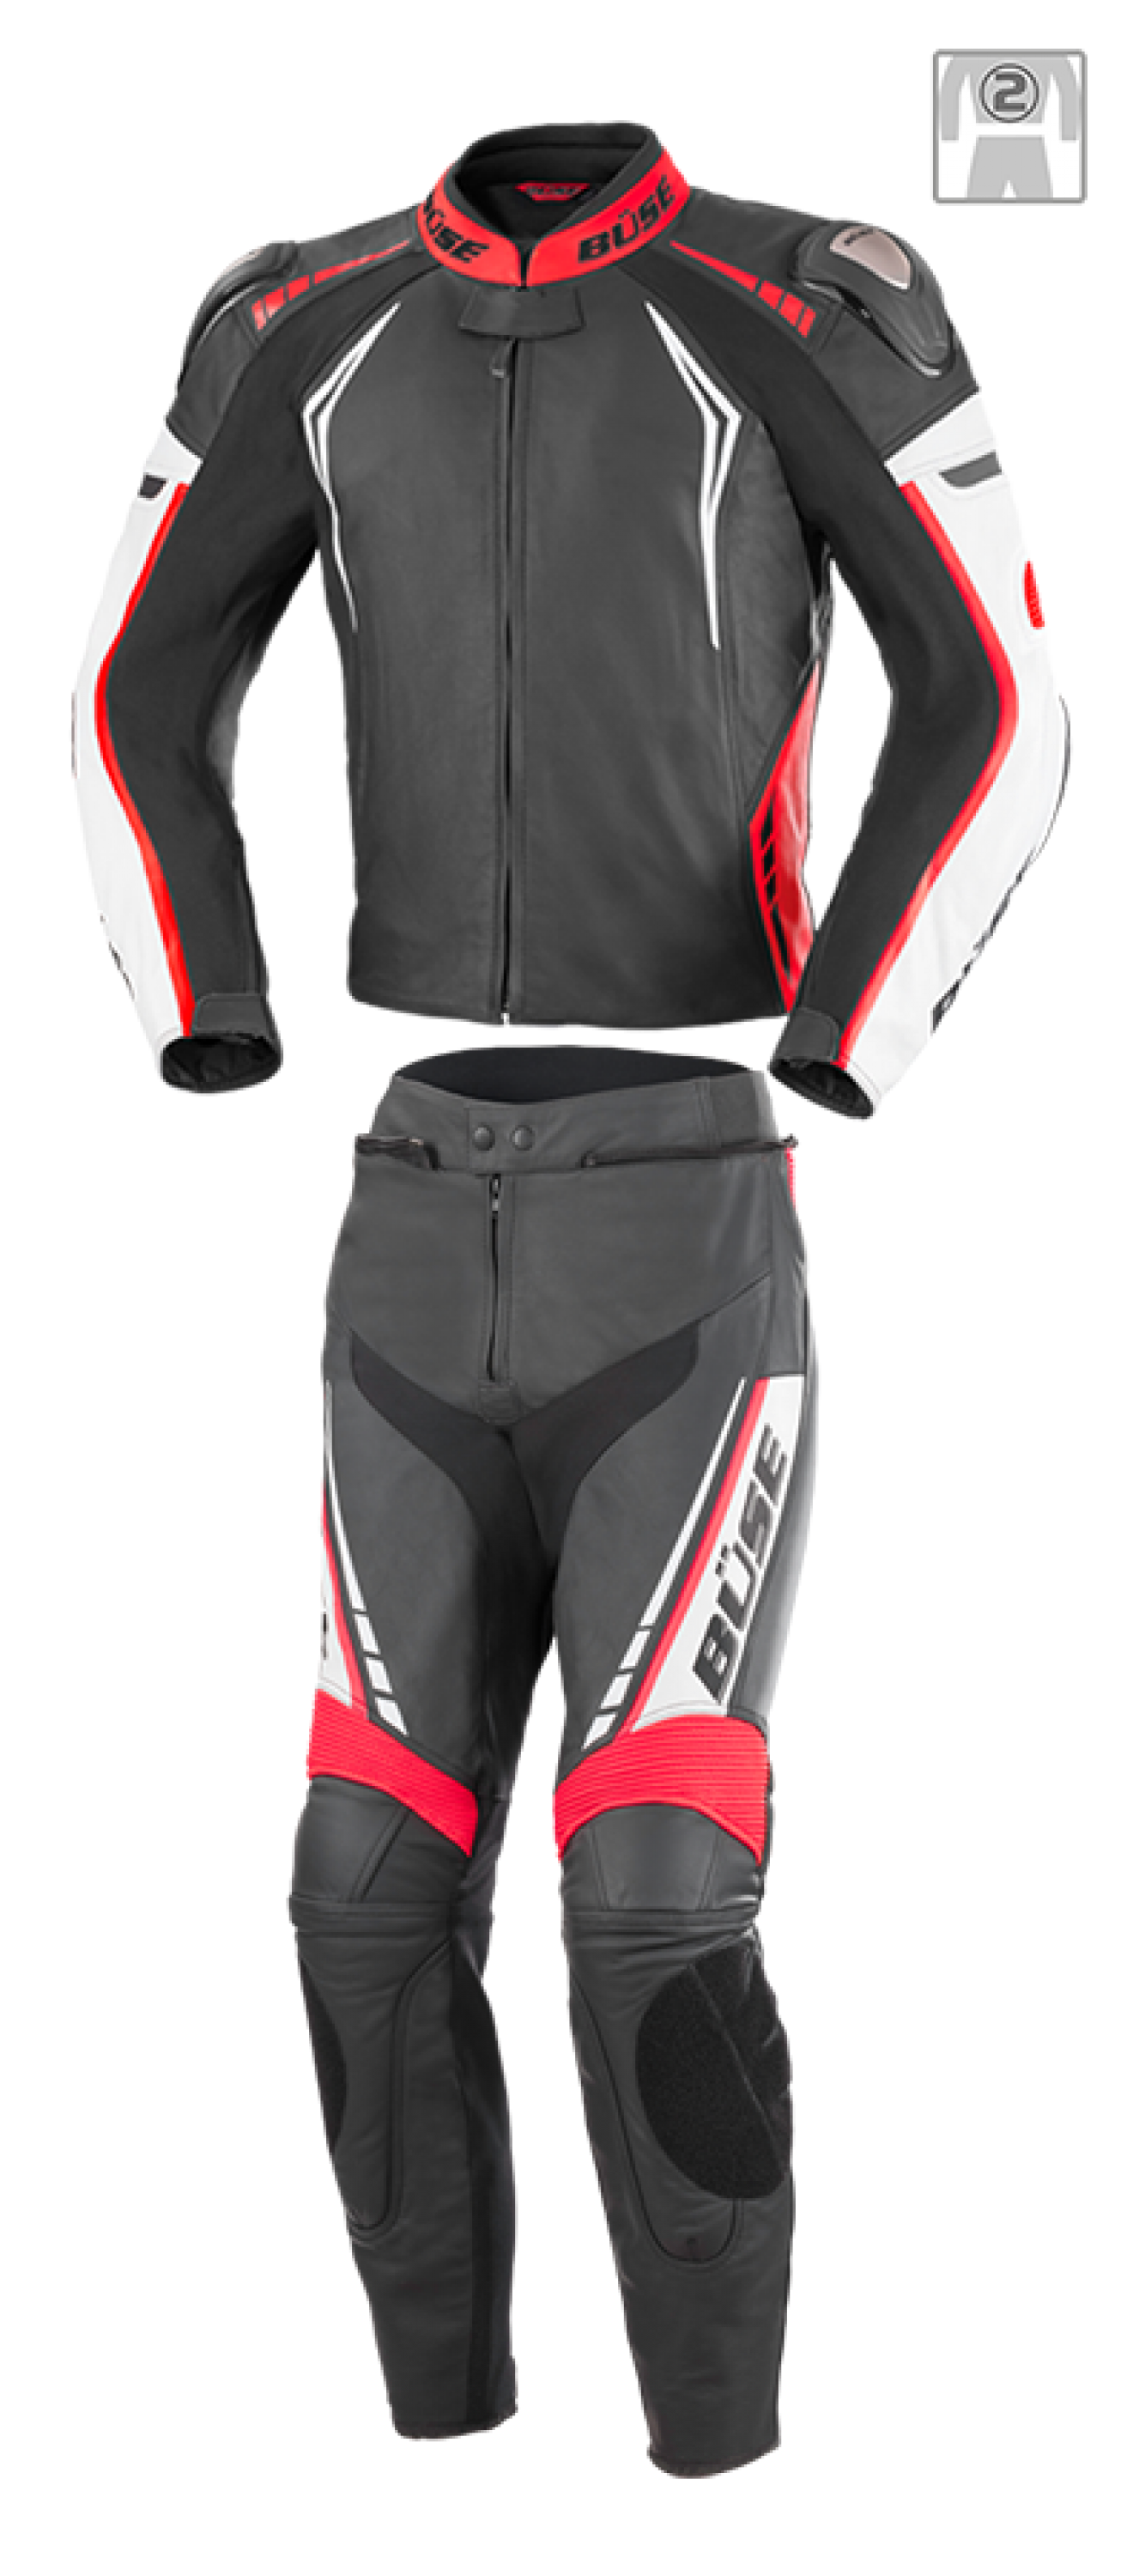 BÜSE Silverstone Pro leather suit 2pcs.